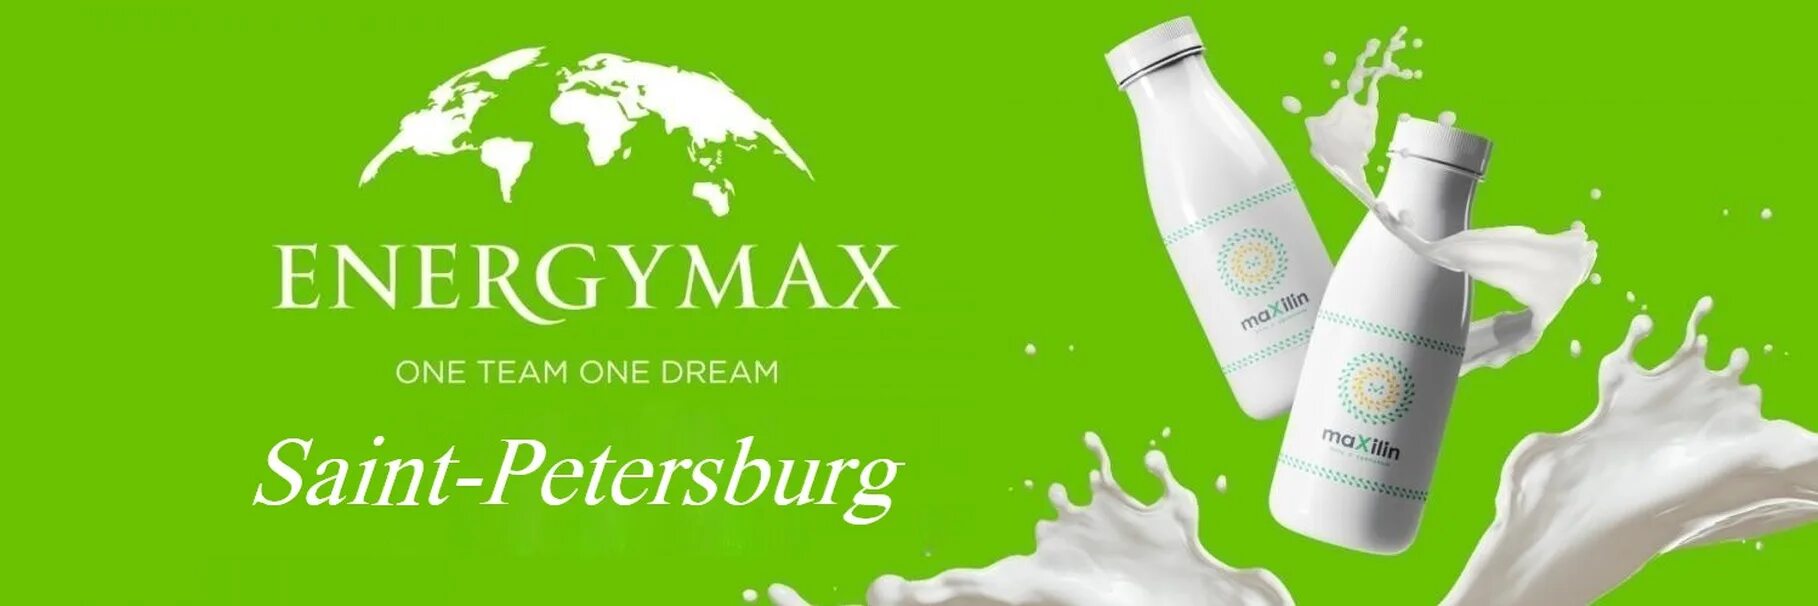 Максилин отзывы. ENERGYMAX продукция. Energy Max компания. Энерджи Макс продукция. Энерджи Макс компания Казахстан.